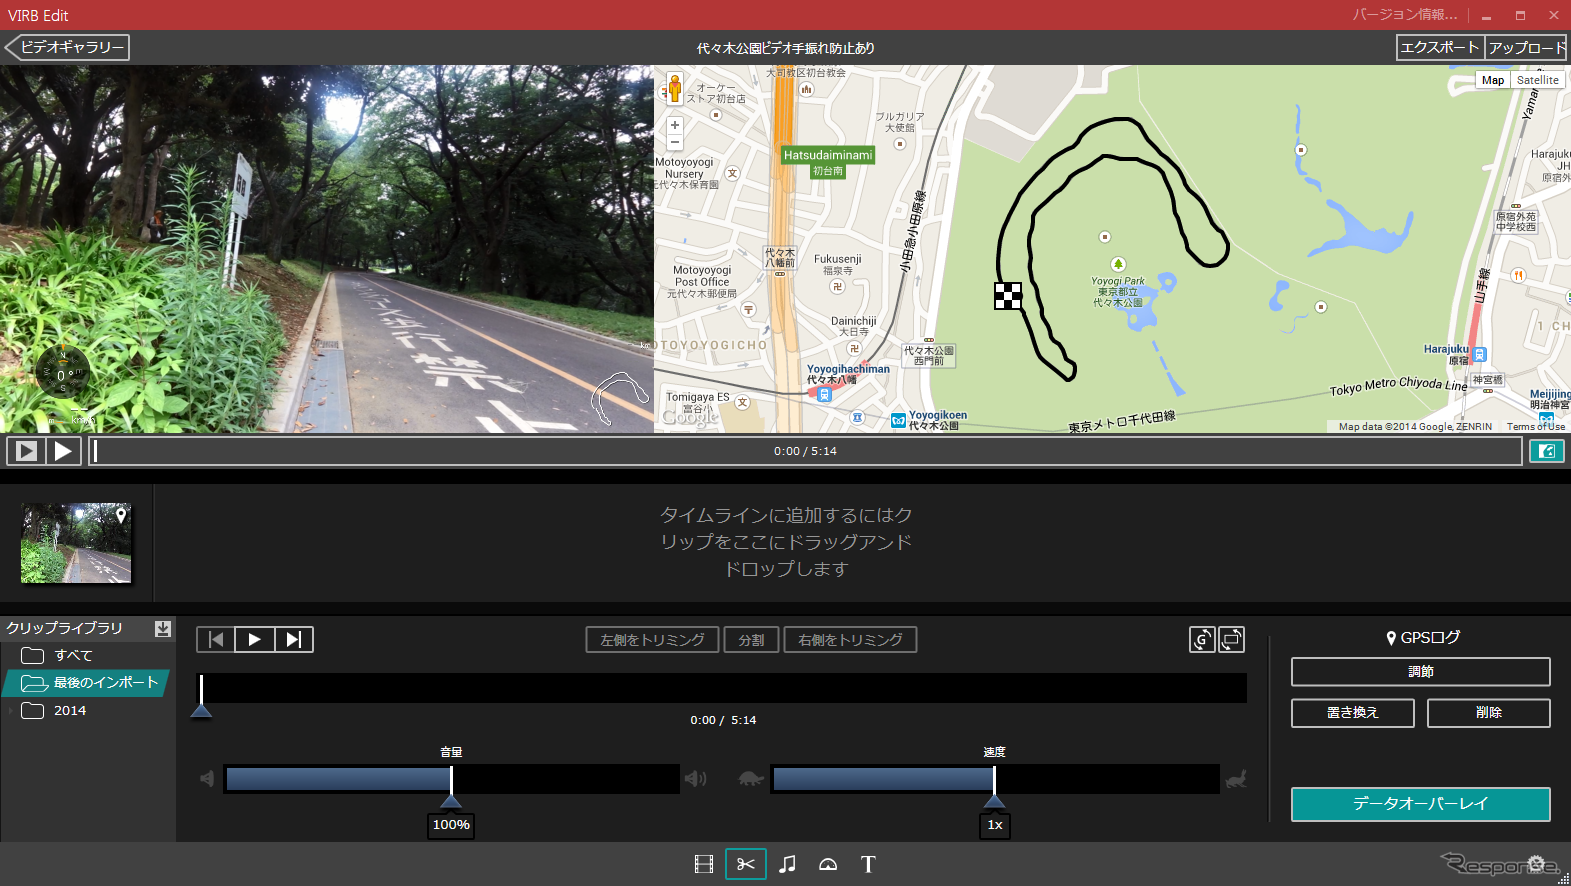 PC/Macに対応する専用の動画編集ソフト「VIRB EDIT」。